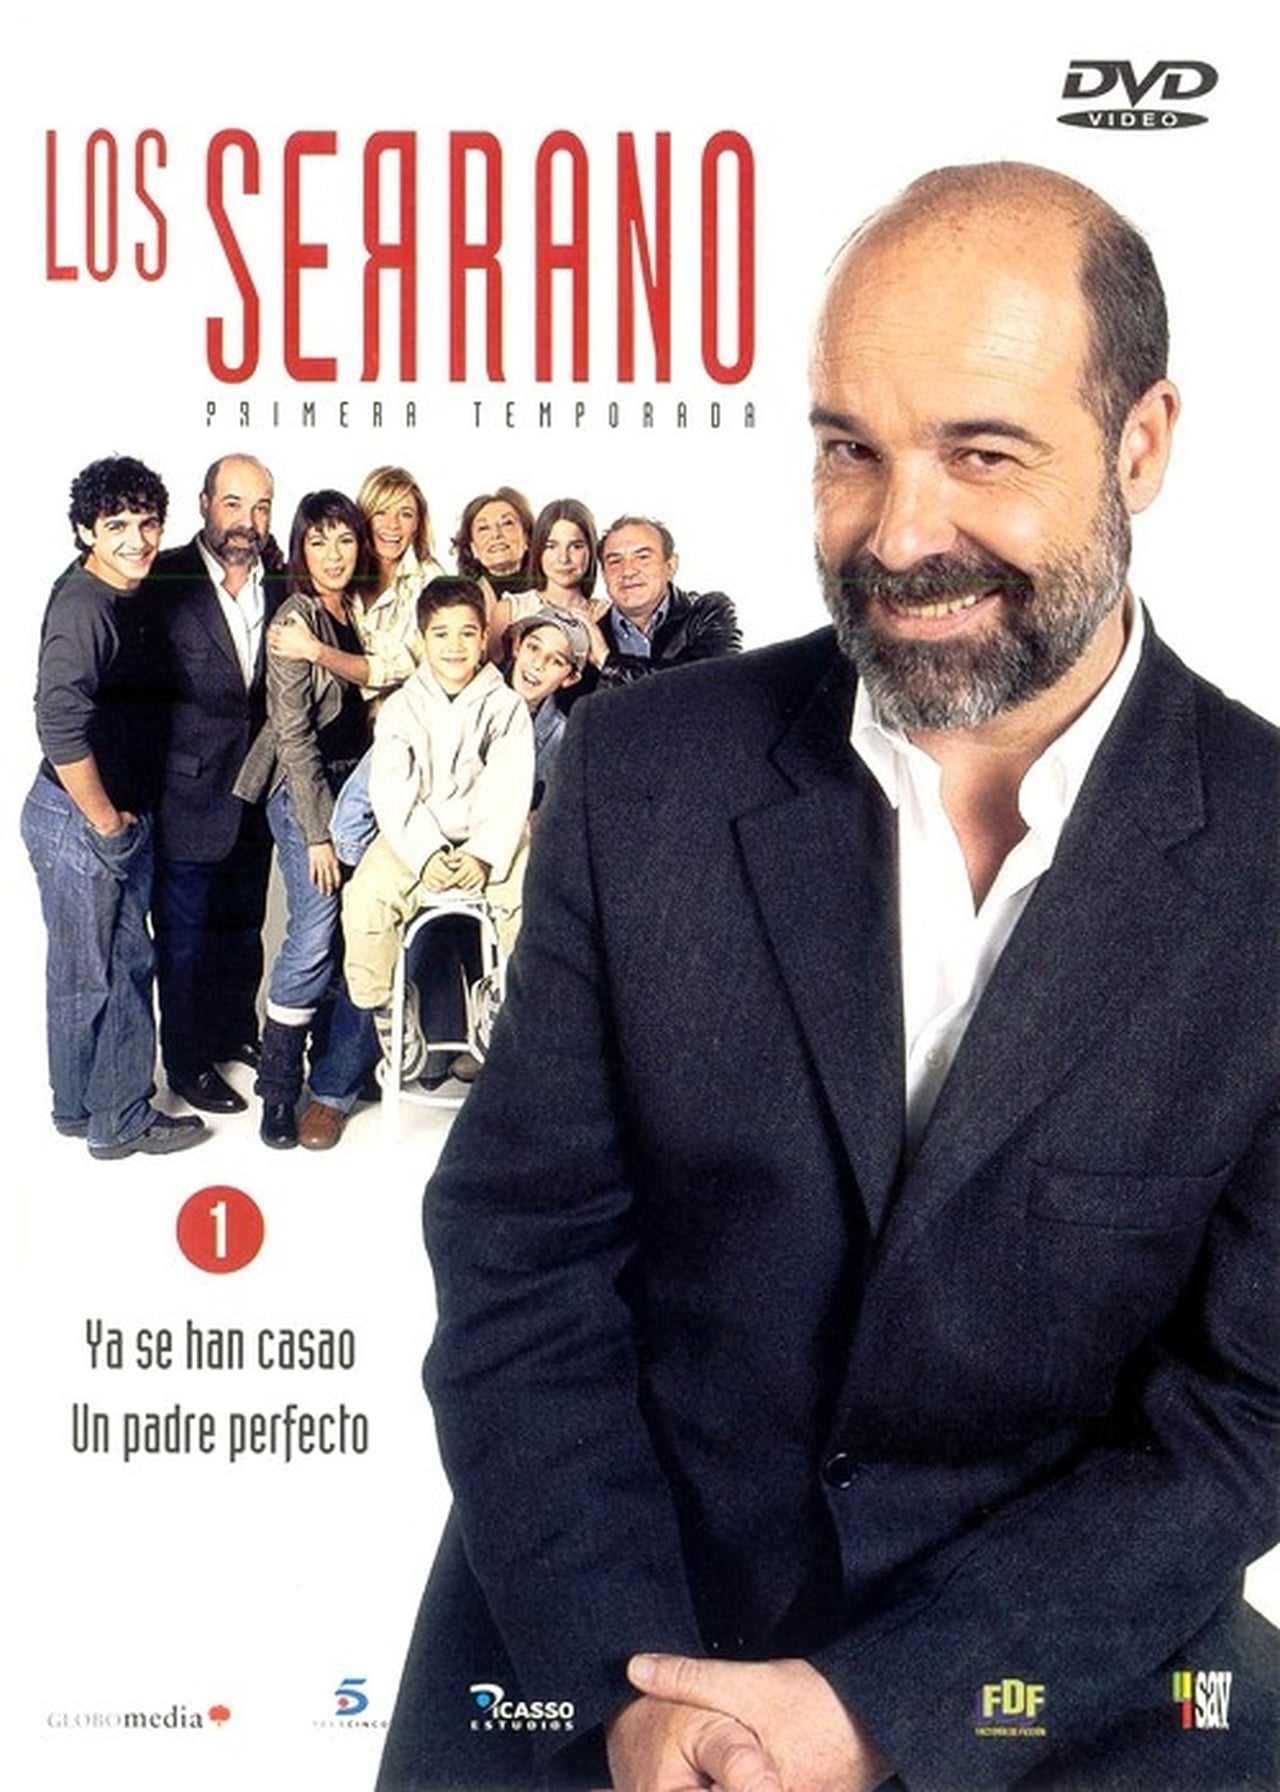 Los Serrano Season 1